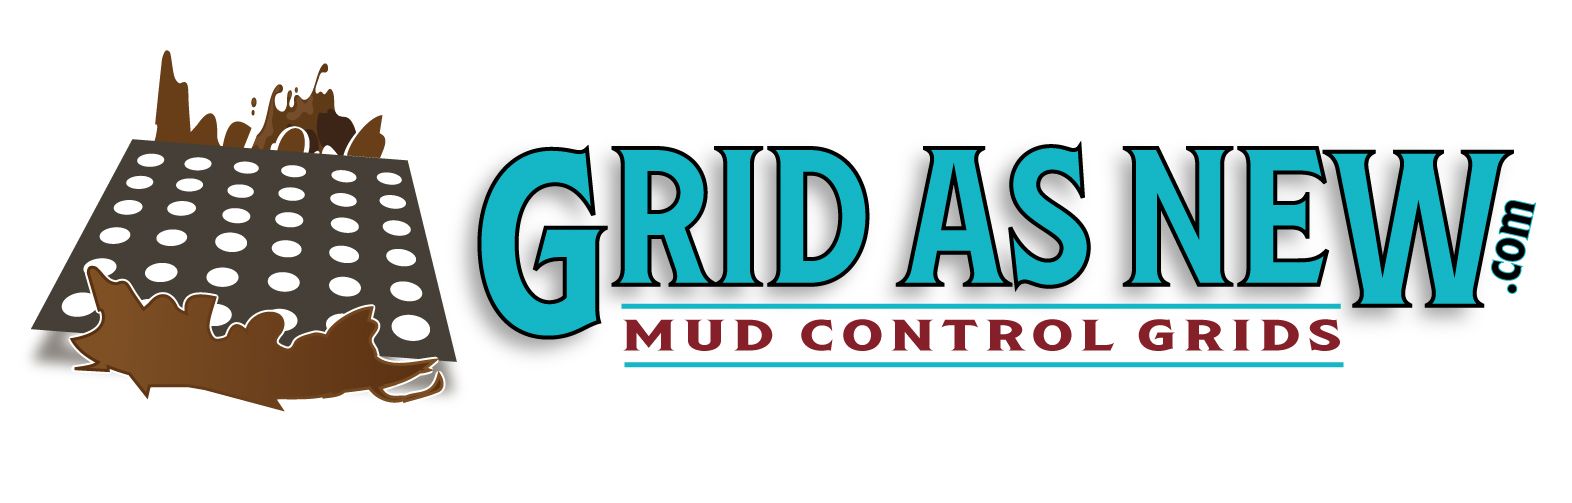 Grid as New Mud Control Grids Logo